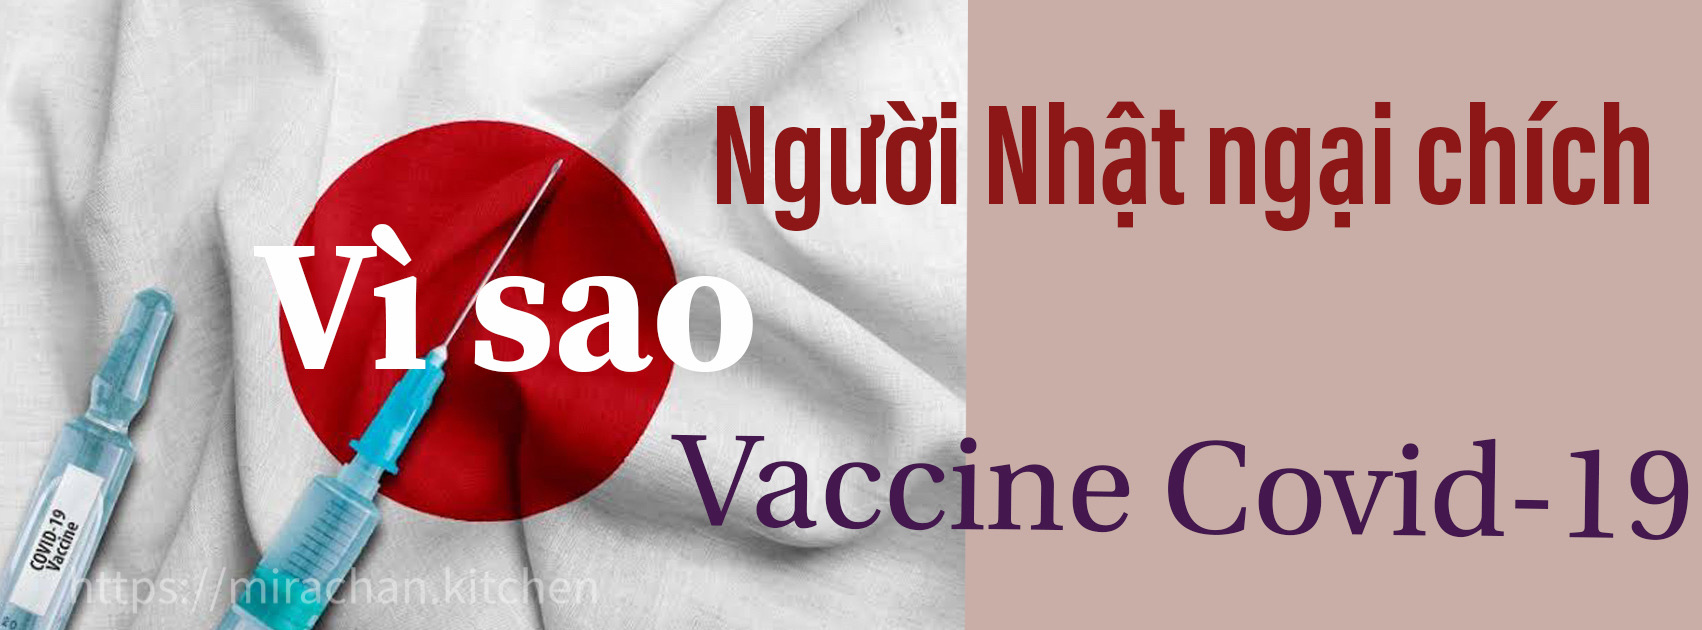 Vì sao người Nhật sợ chích vaccine Covid-19